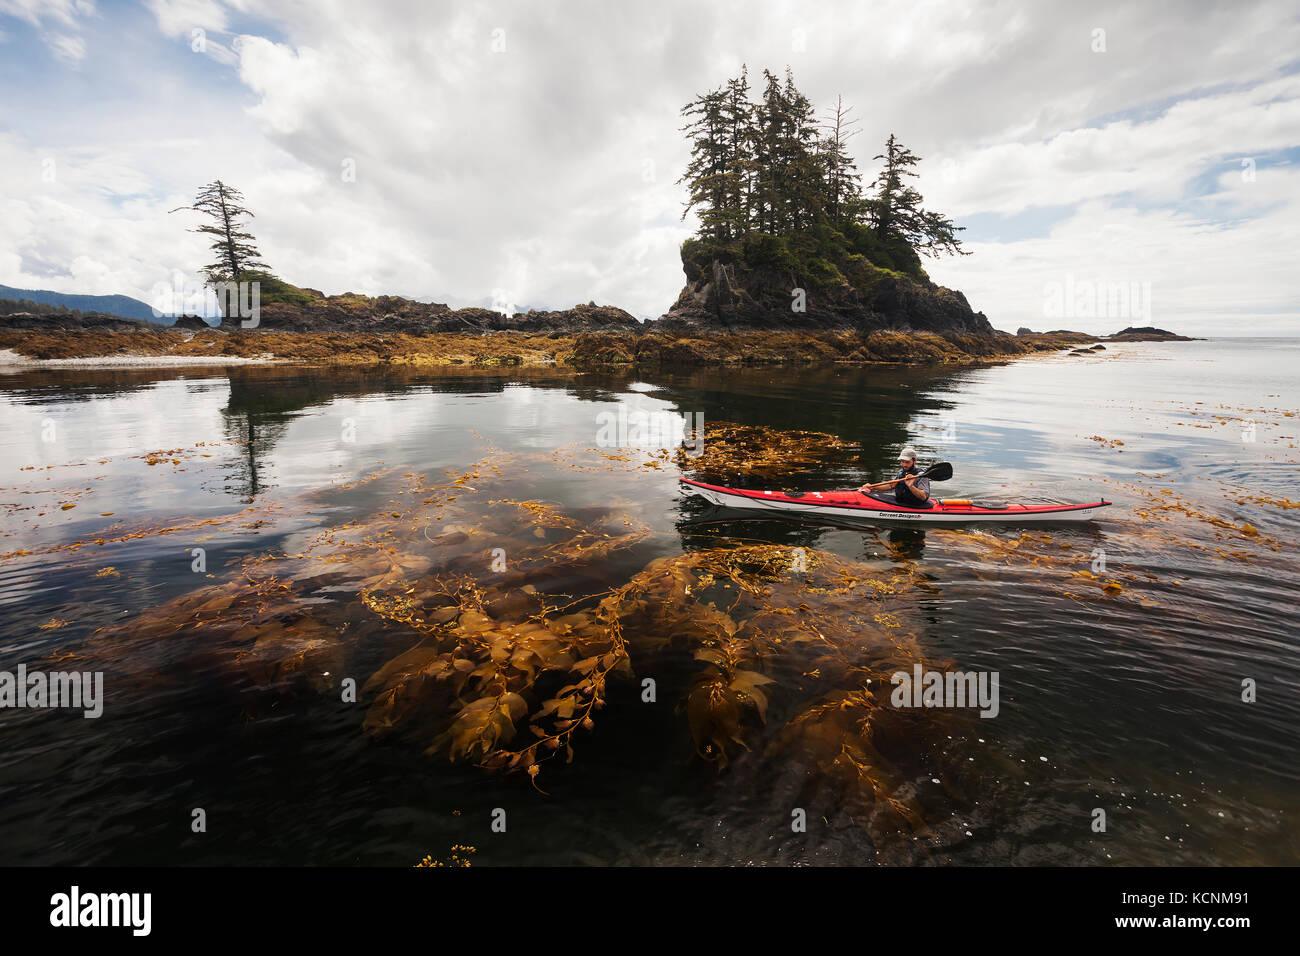 Un kayak rema a través de un bosque de algas en el lado este de la Isla Spring. Kyuquot, Isla de Vancouver, Columbia Británica, Canadá. Foto de stock